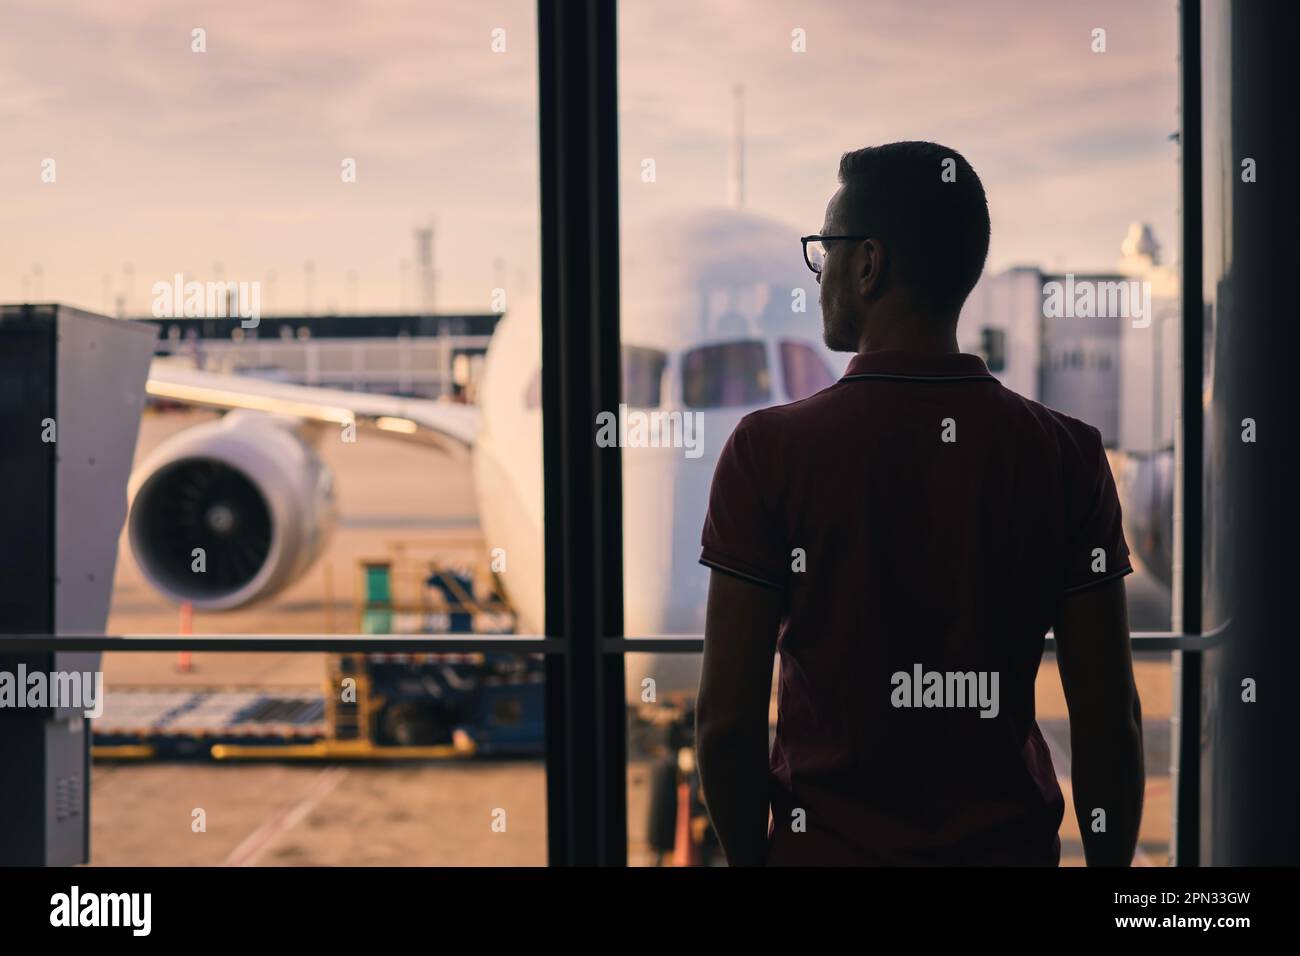 Der Reisende schaut aus dem Flughafenfenster auf das Flugzeug. Silhouette eines Mannes, der auf seinen Flug wartet. Stockfoto